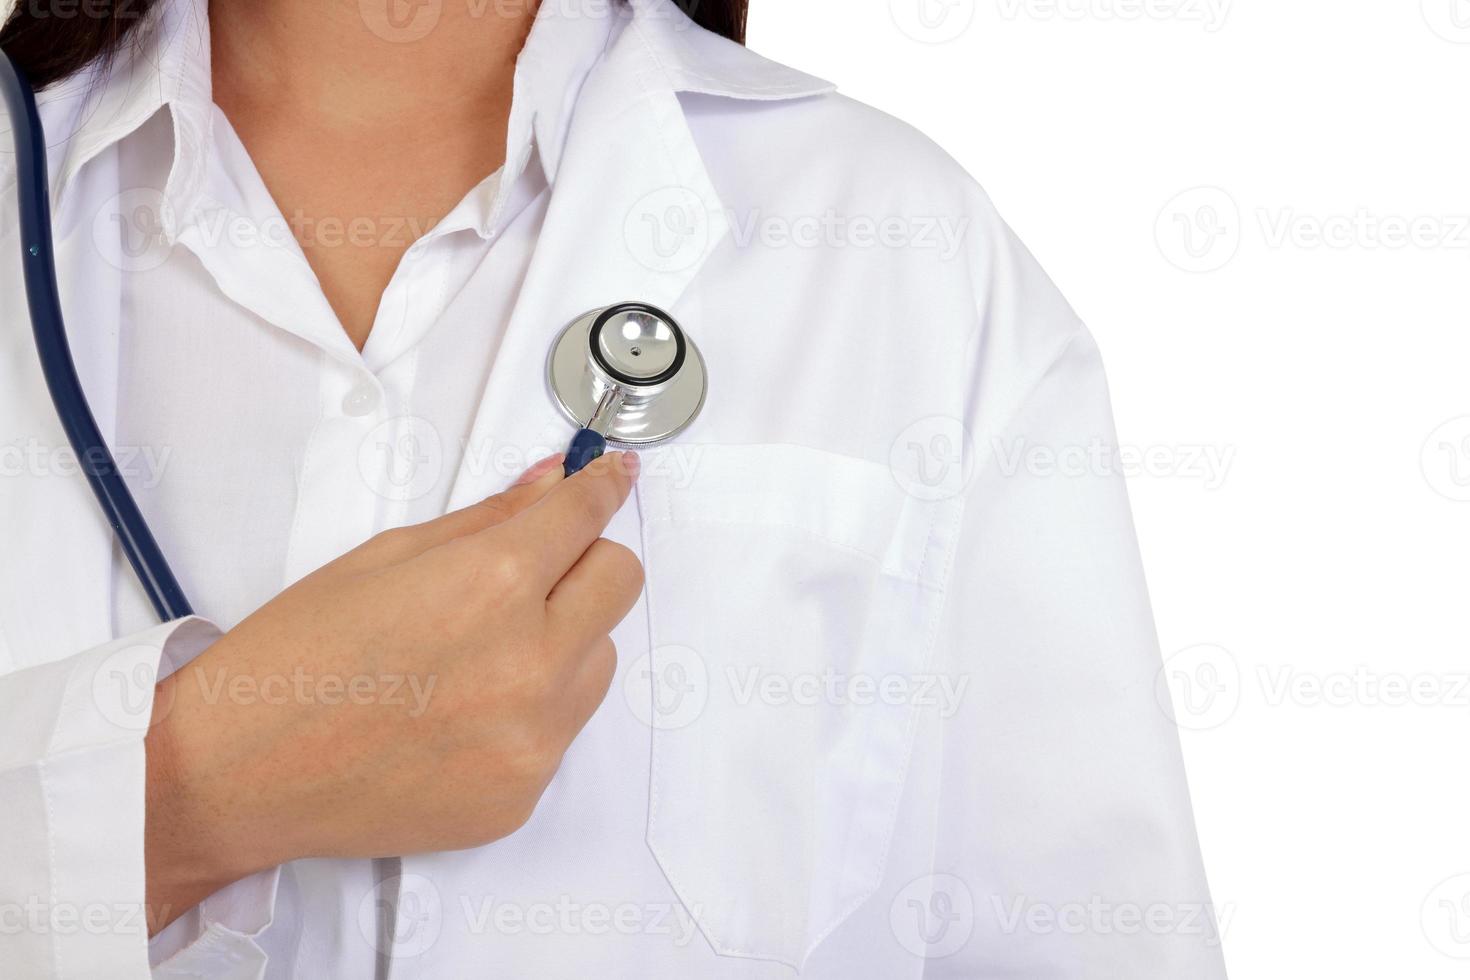 femme médecin a tenu un stéthoscope pour examiner son cœur. le concept de prendre soin de soi. services médicaux dans les hôpitaux. fond blanc. isolé. chemin de détourage photo